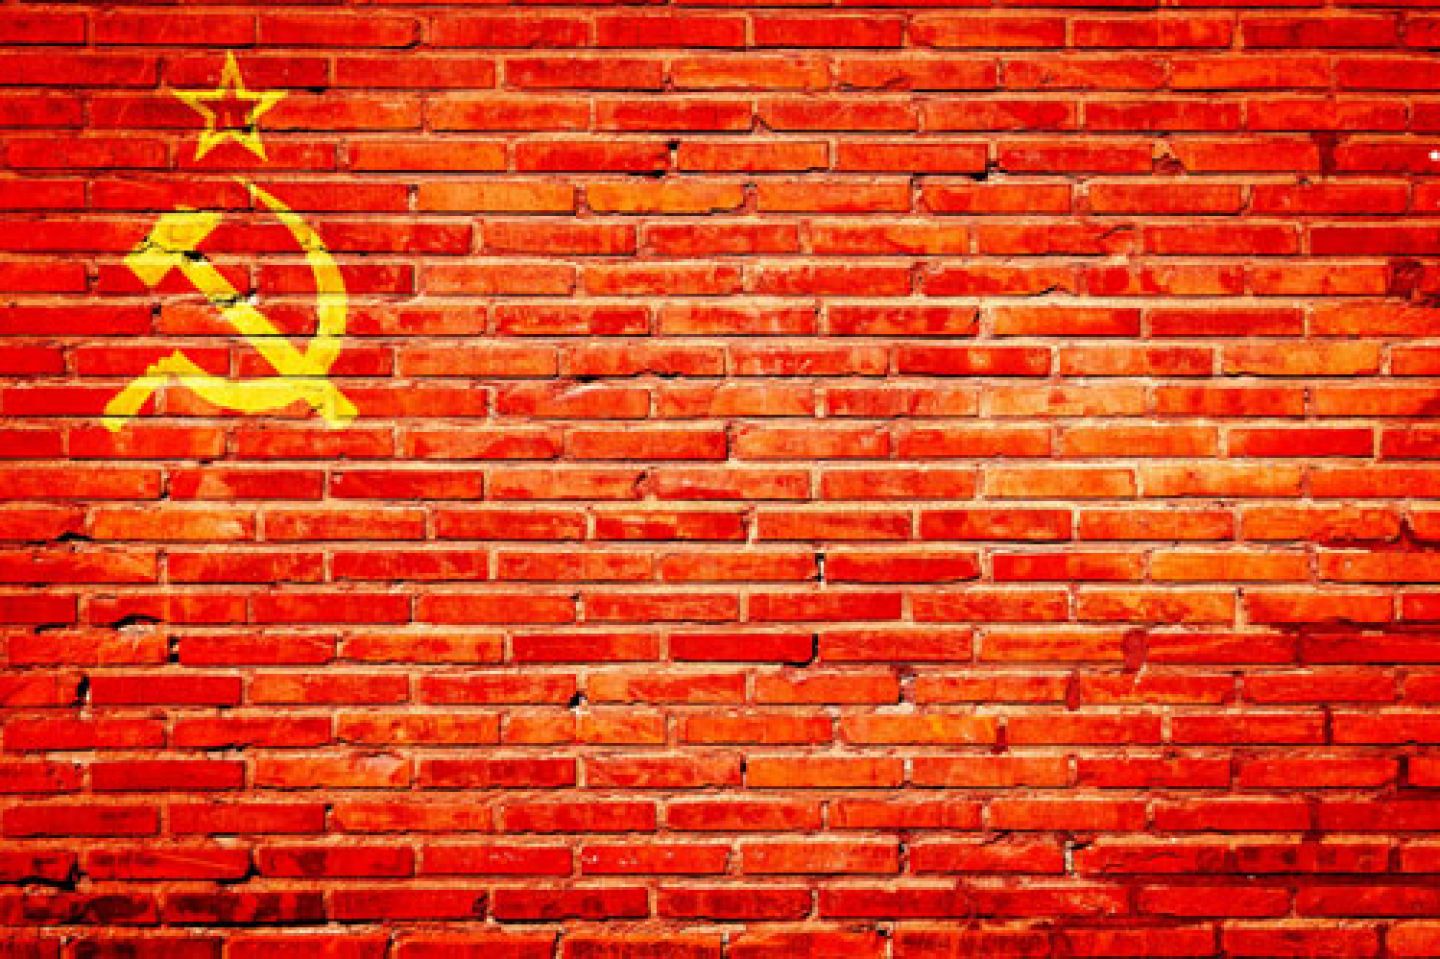 Soviet flag on brick wall